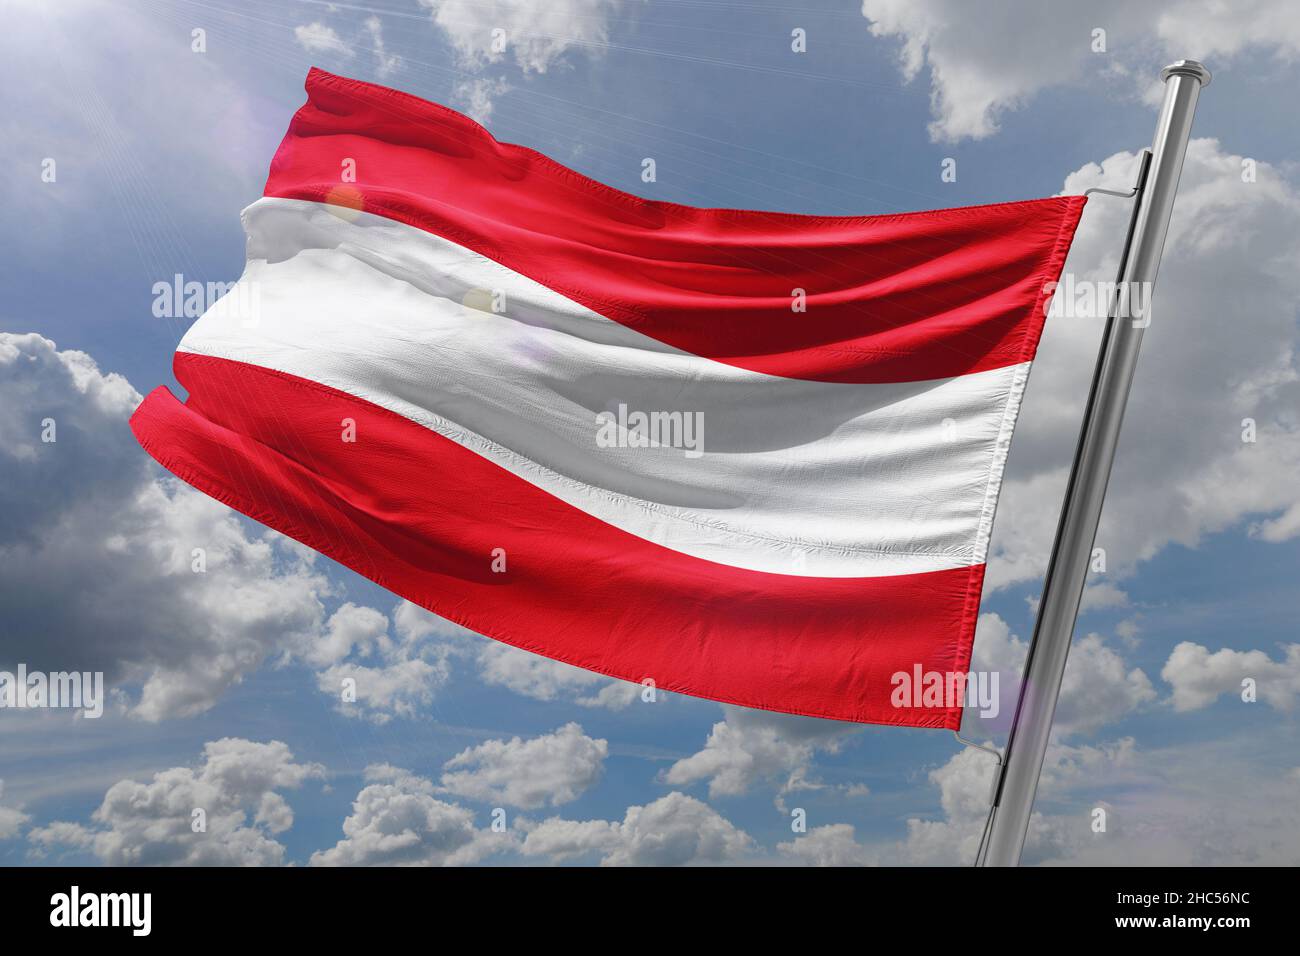 Bandiera dell'Austria, repubblica d'austria Foto Stock